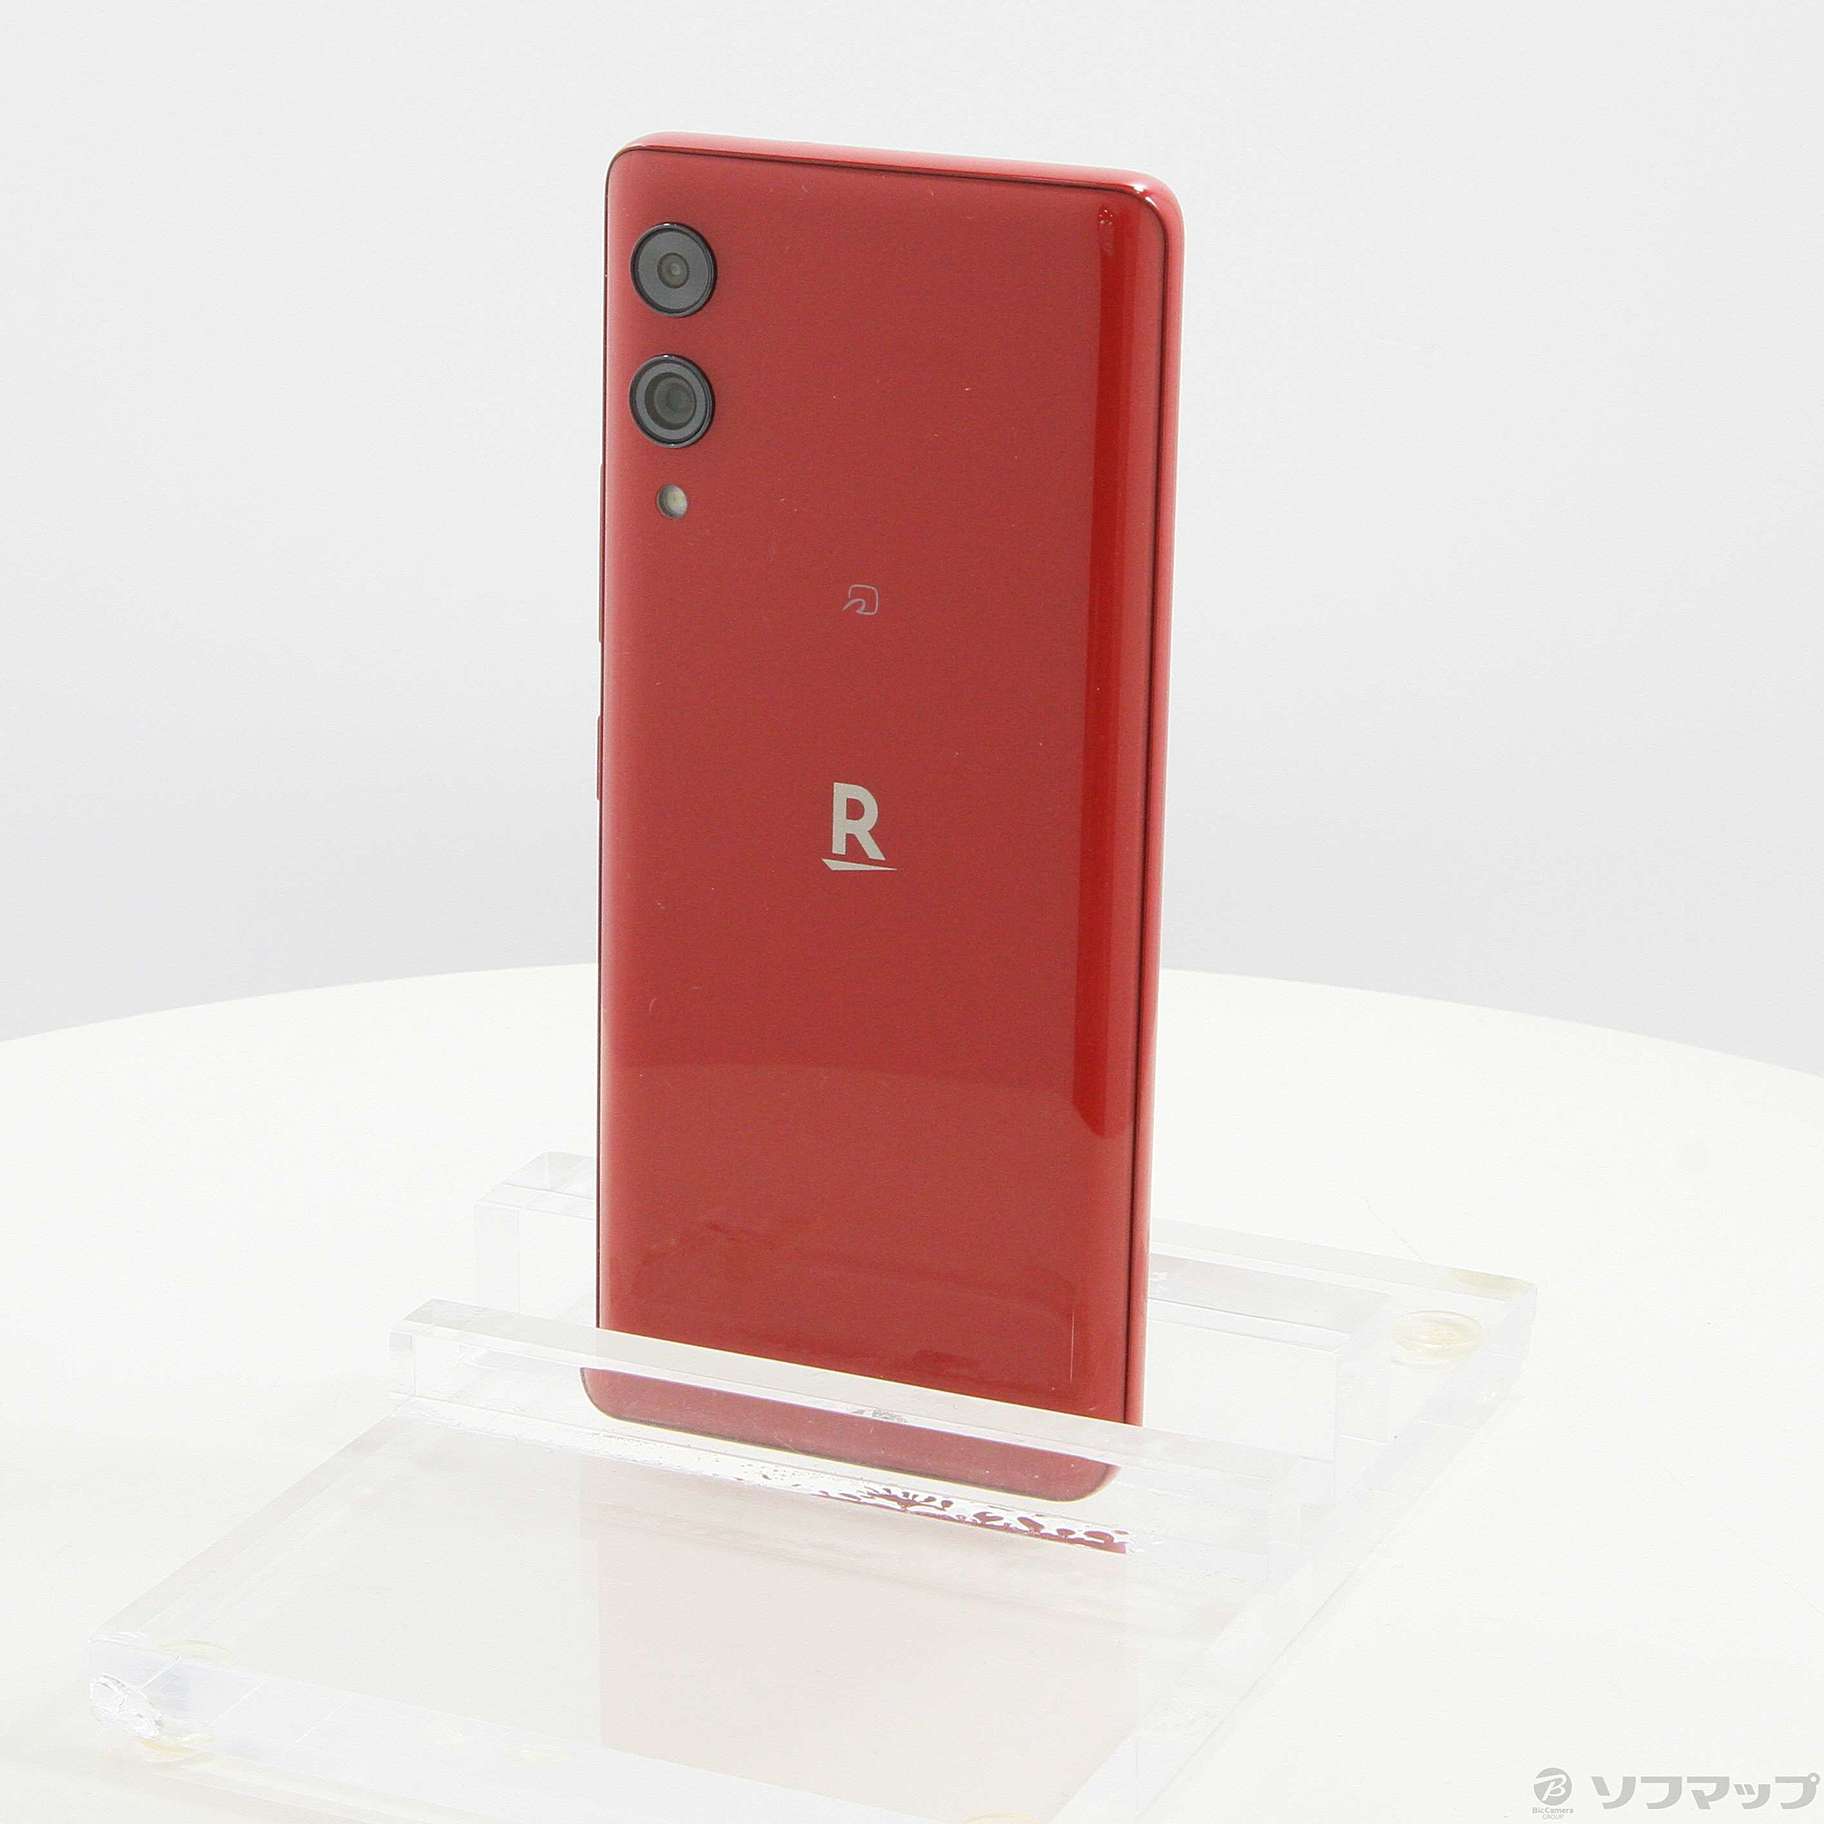 Rakuten Hand 5G Red P780 モバイルAndroidSIMフリー